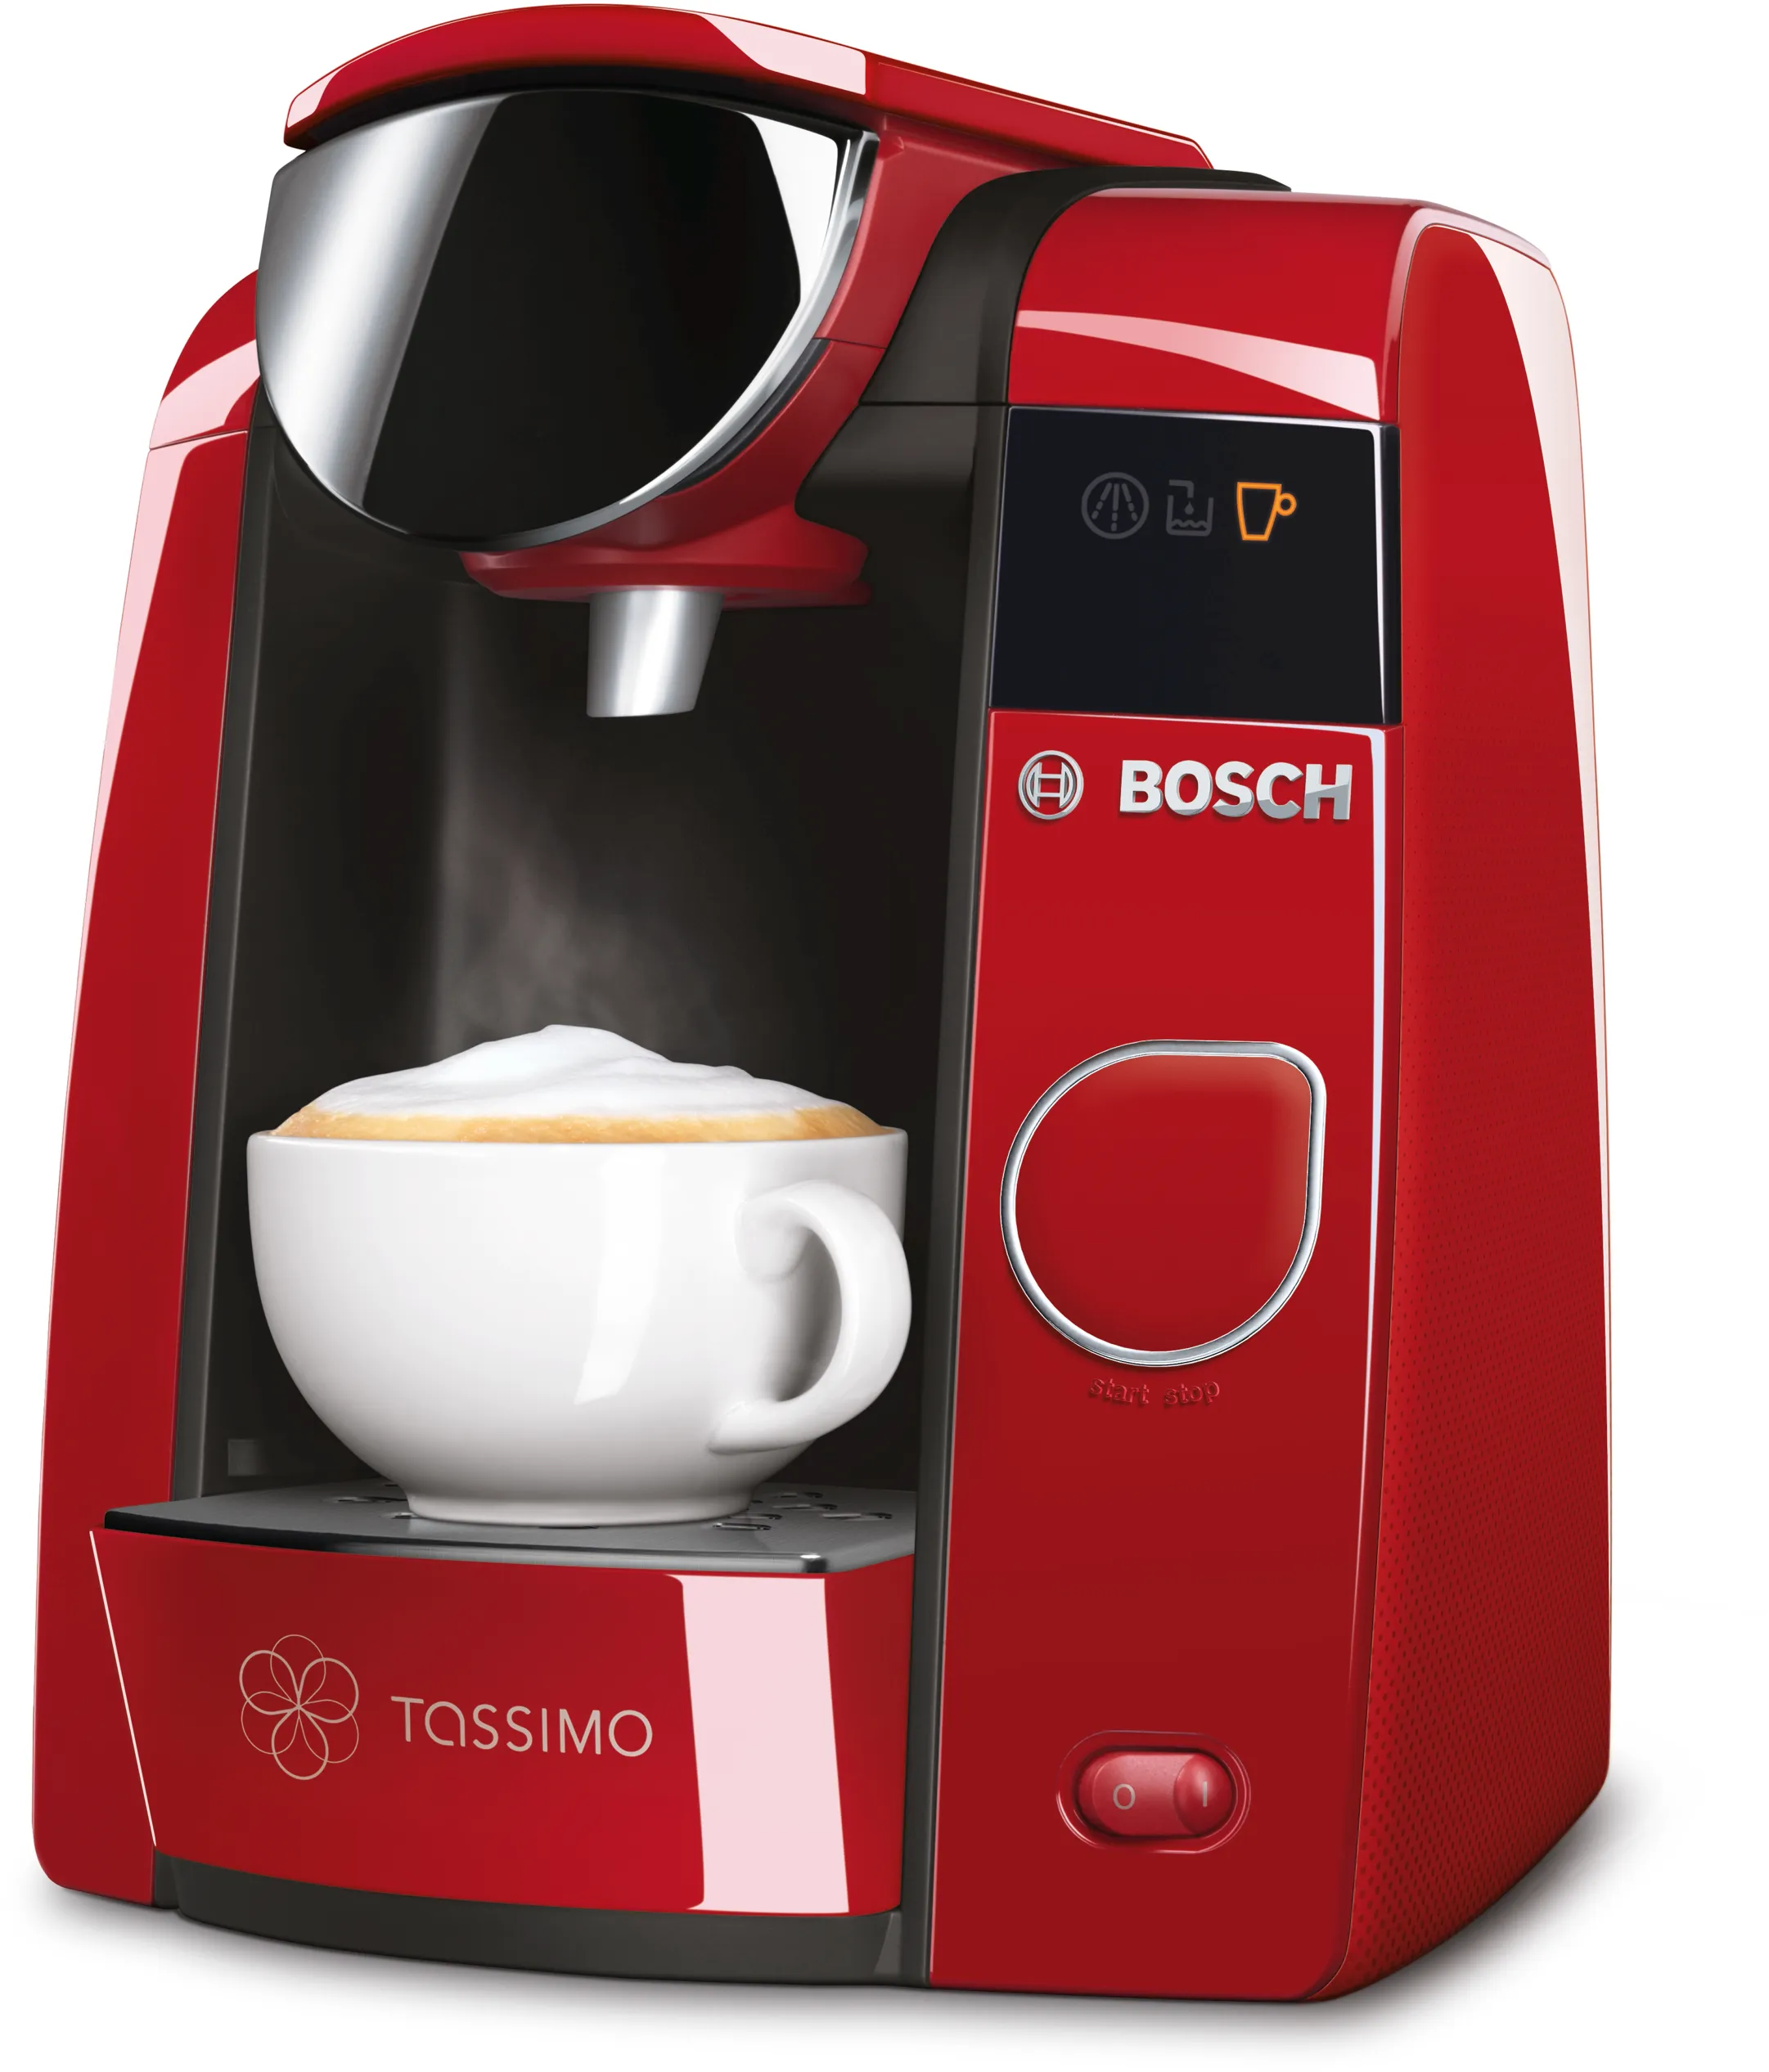 Tas4503 Hot Drinks Machine Bosch Cz